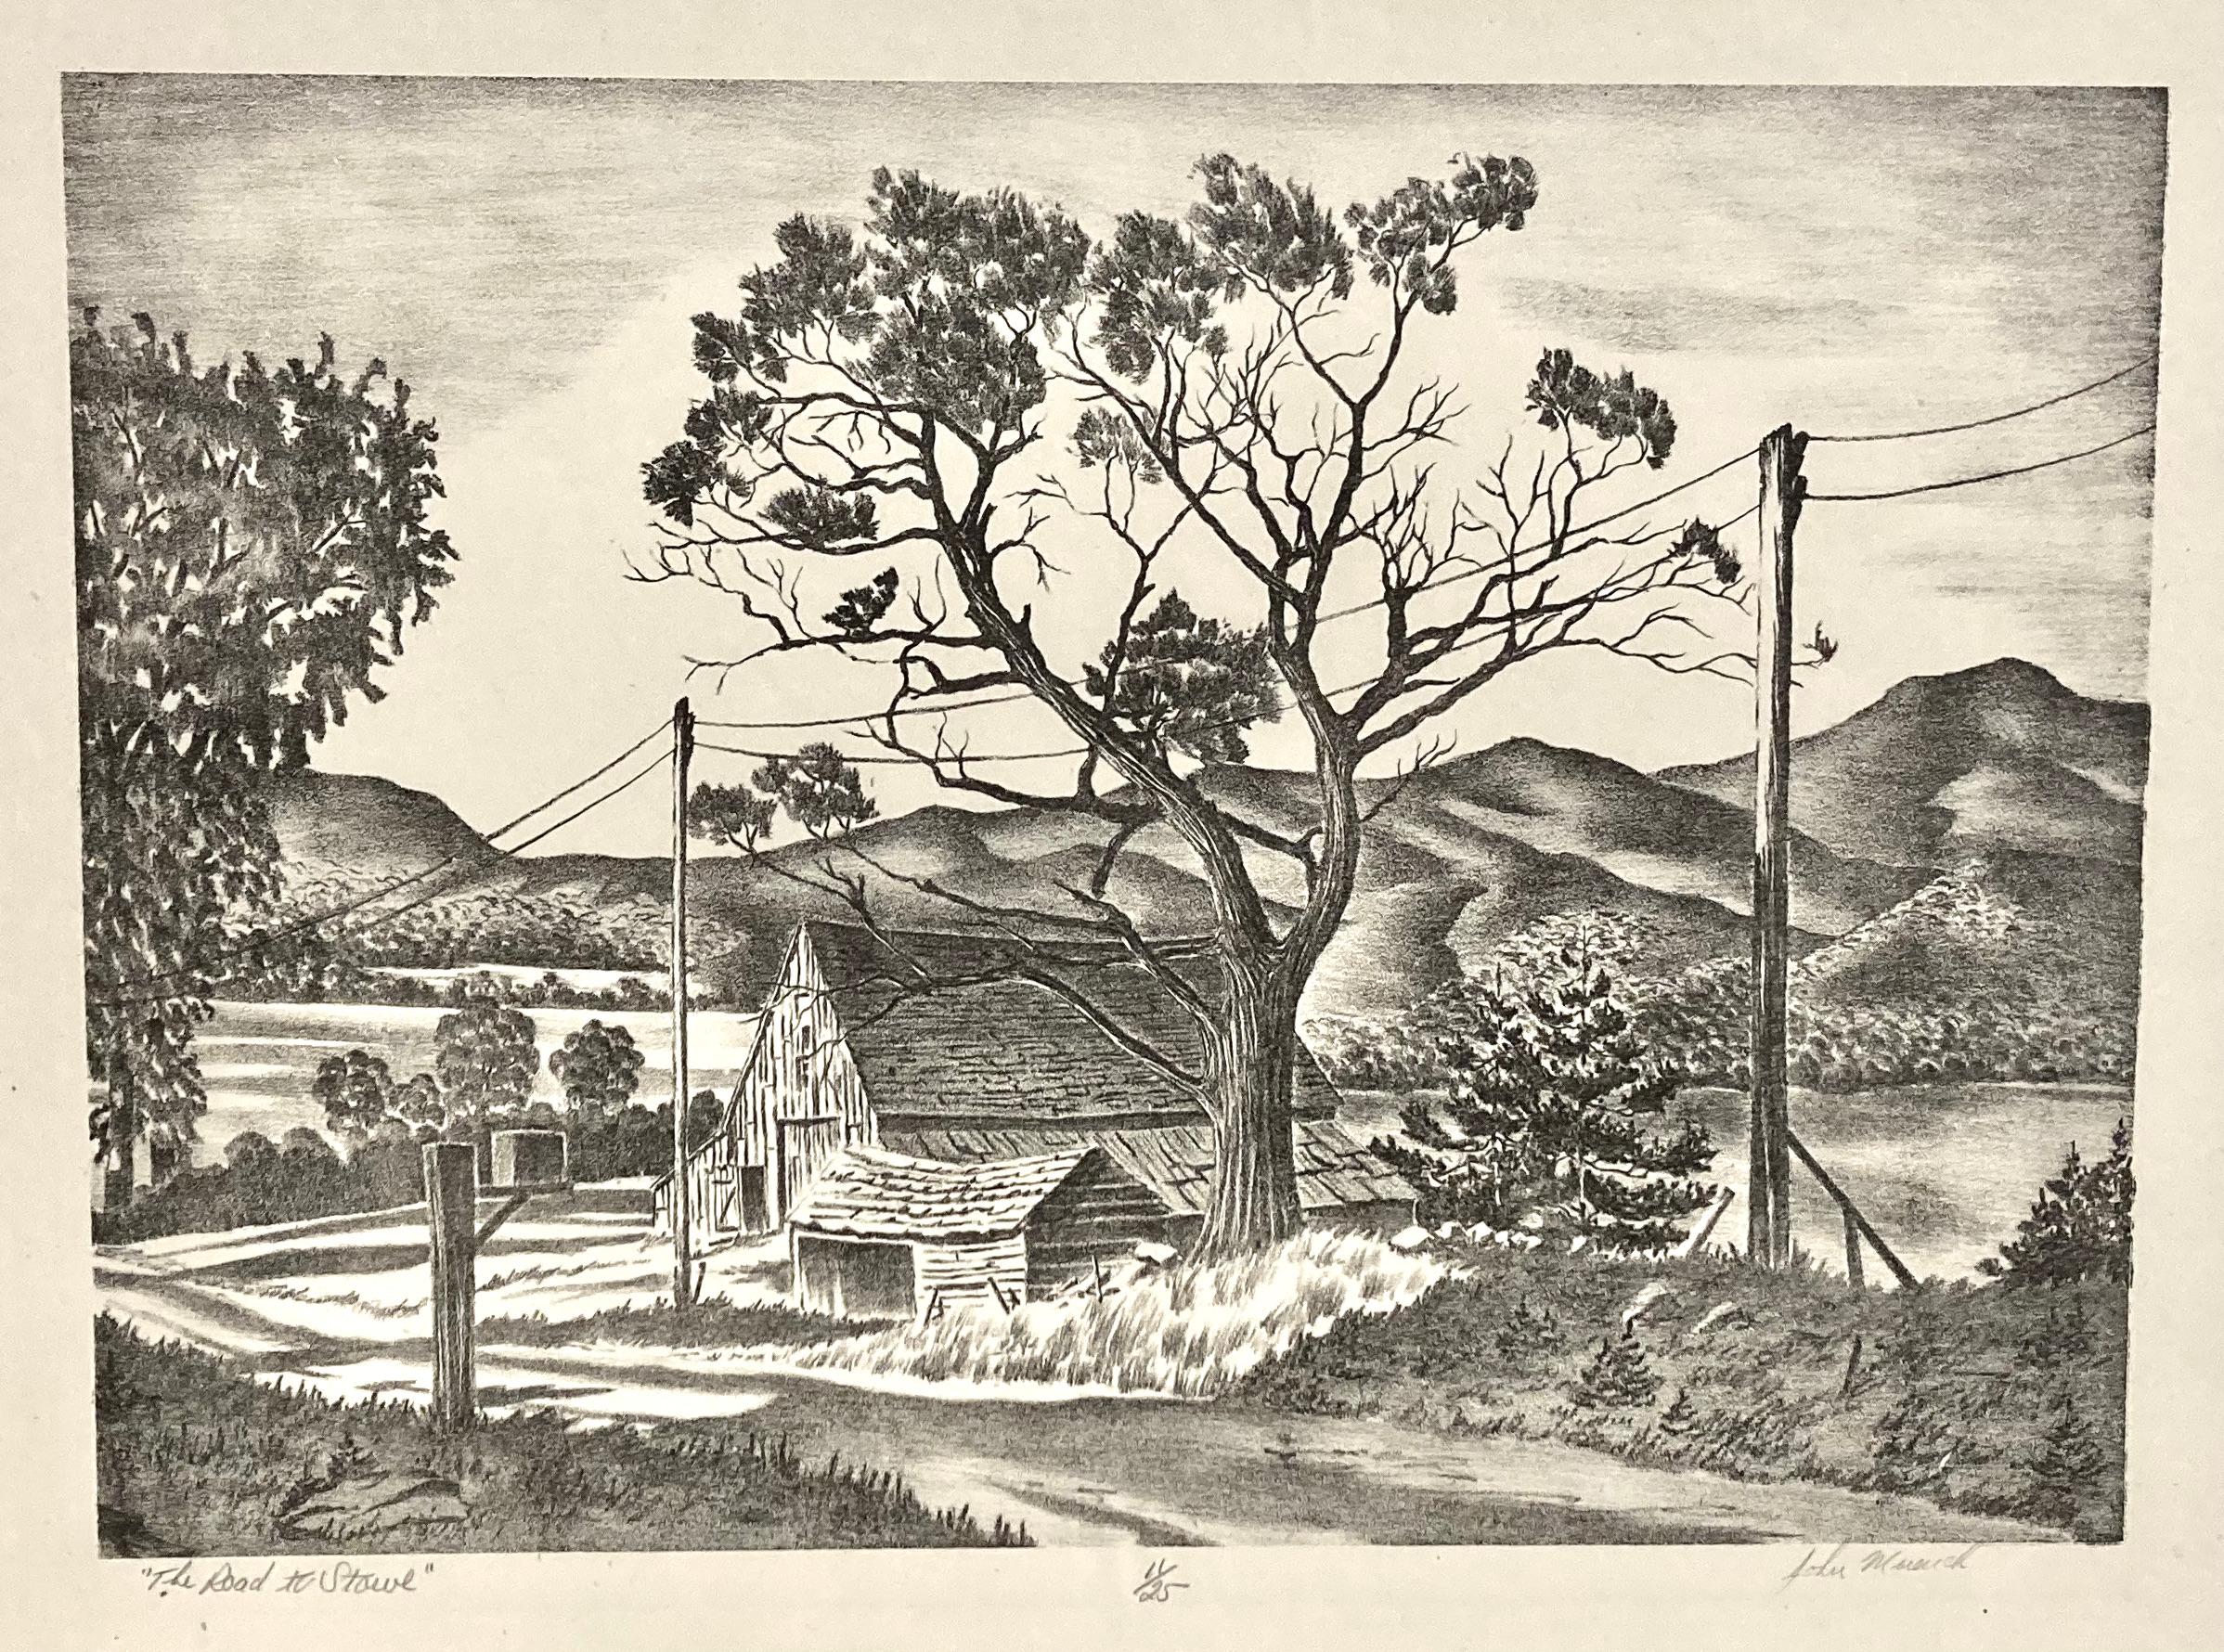 John Muench war ein Meister im Zeichnen auf einem Lithografiestein. Er war ein Neuengländer, und dies ist ein klassisches Thema sowohl für ihn als auch für die Region. Die Bäume, die alten Scheunen, der Briefkasten und die Landschaft selbst - die